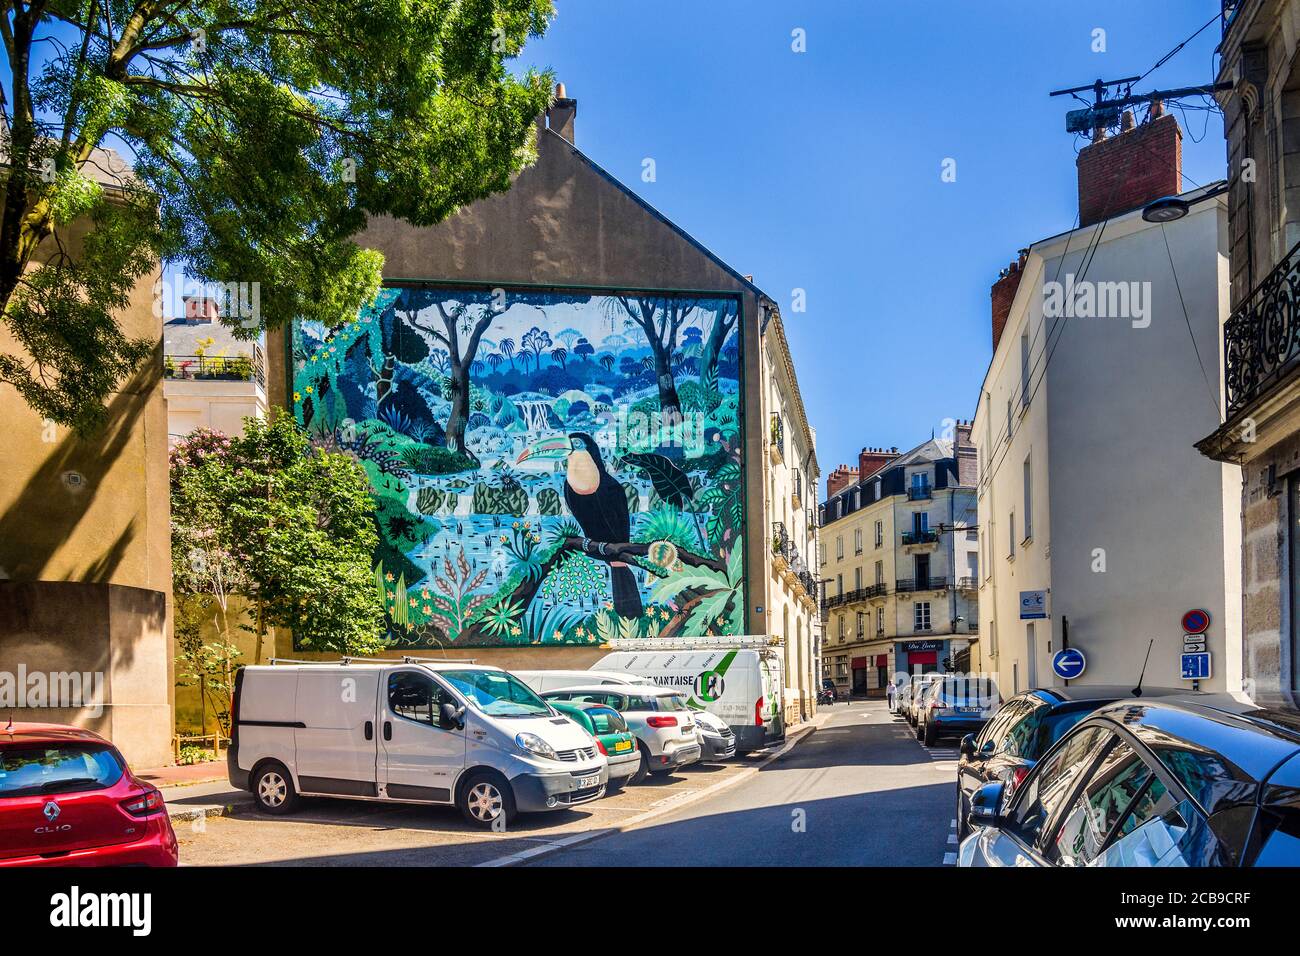 'Toucans à bec caréné' street art mural on canvas (125 msq) by Alain Thomas - Rue Fanny Peccot, Nantes, Loire-Atlantique, France. Stock Photo